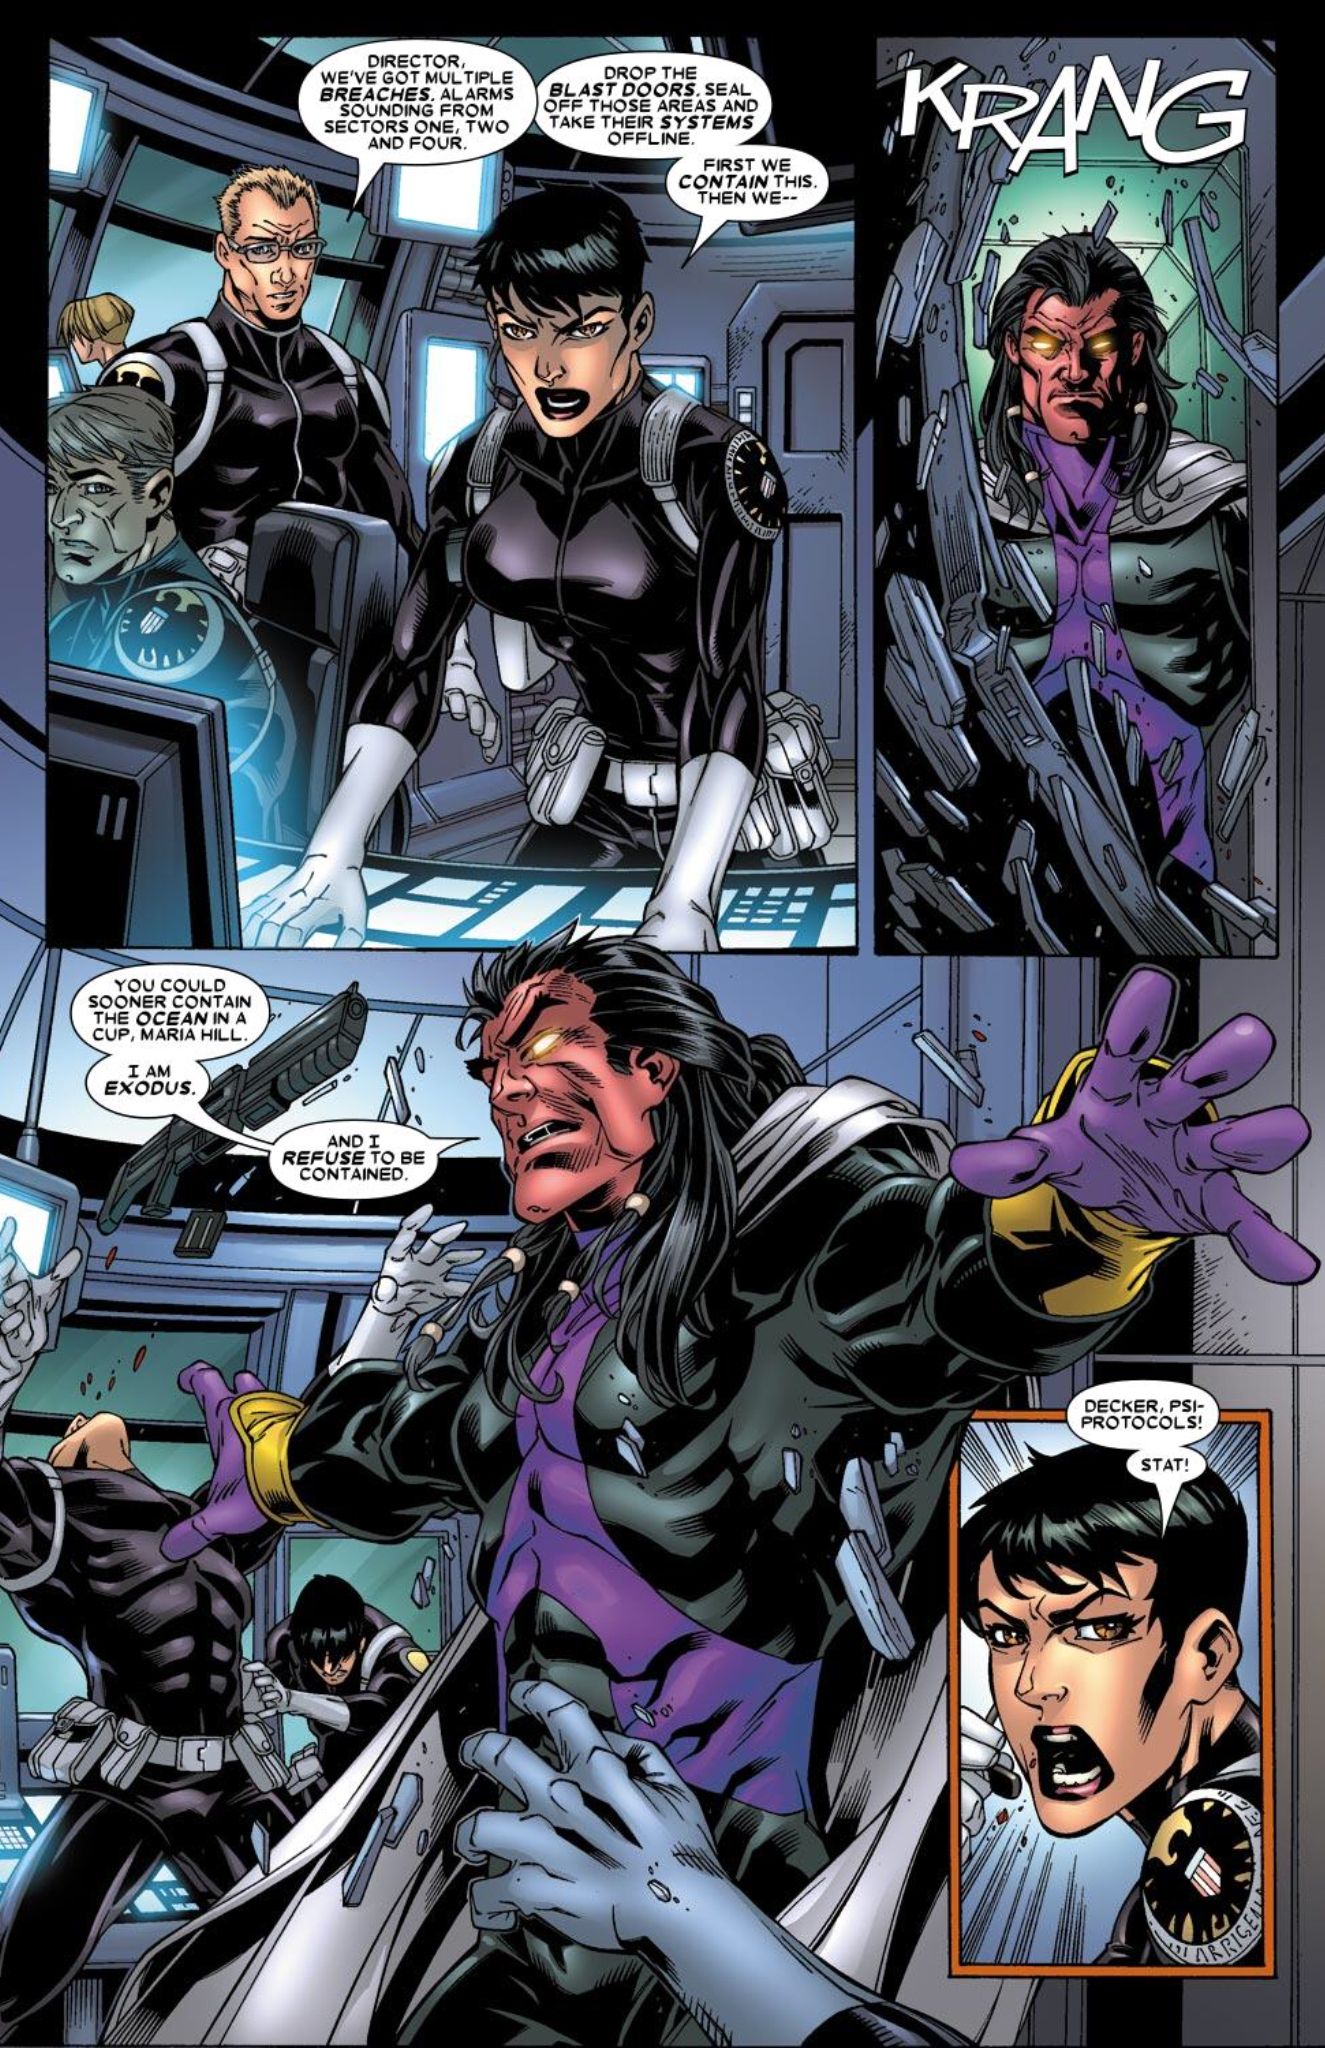 X-Men Annual #1